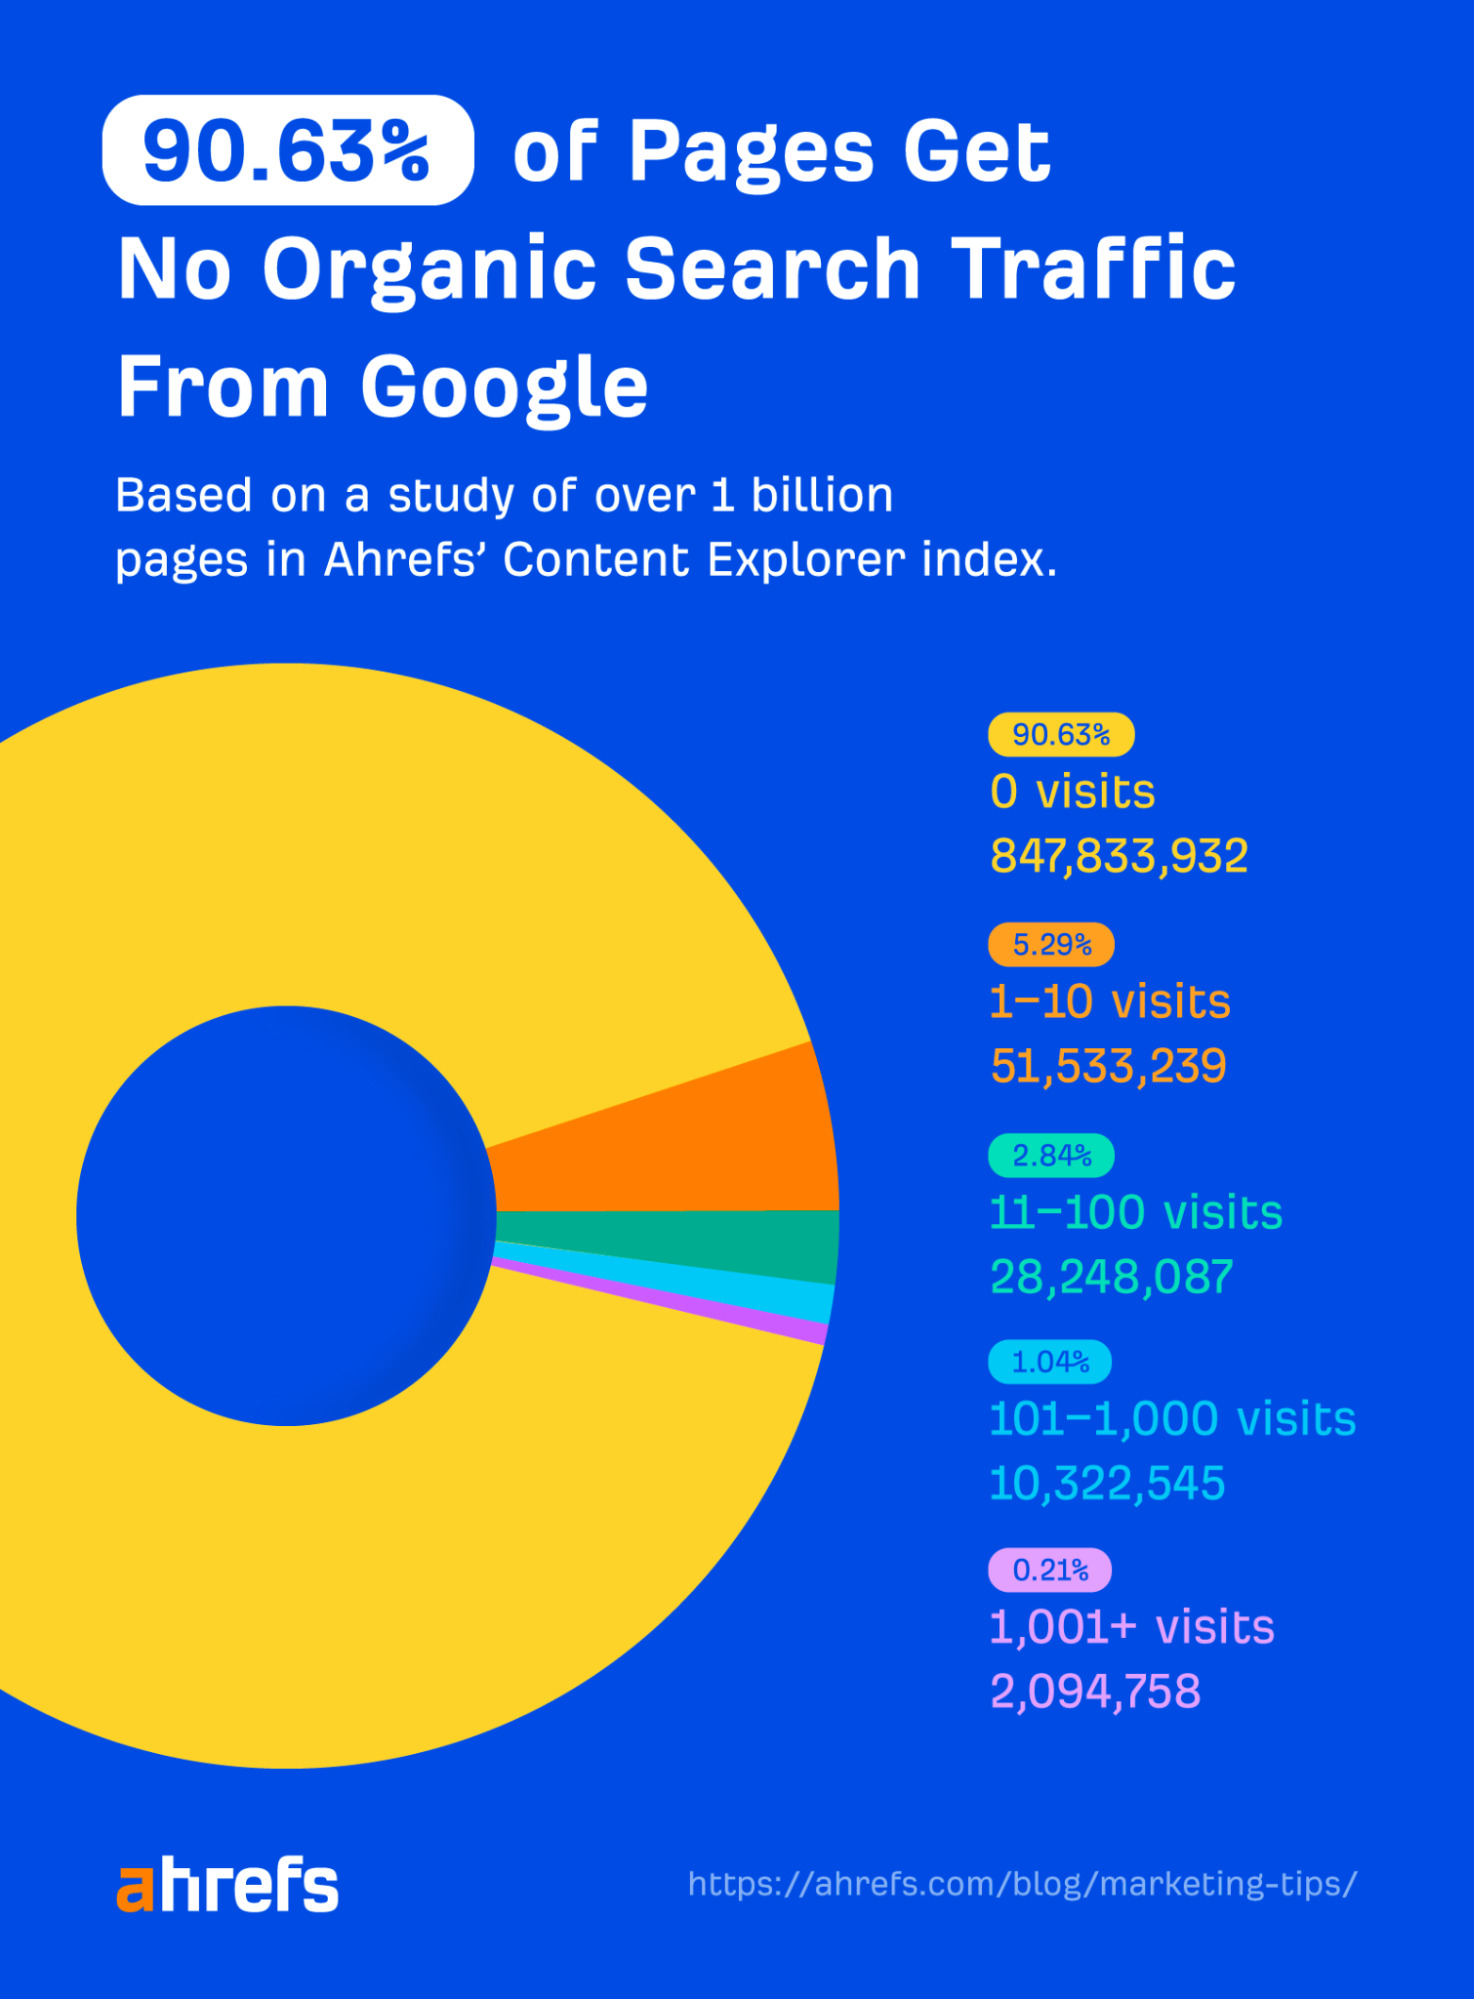 بر اساس مطالعه Ahrefs، 90.63 درصد از صفحات ترافیک صفر از گوگل دریافت می کنند